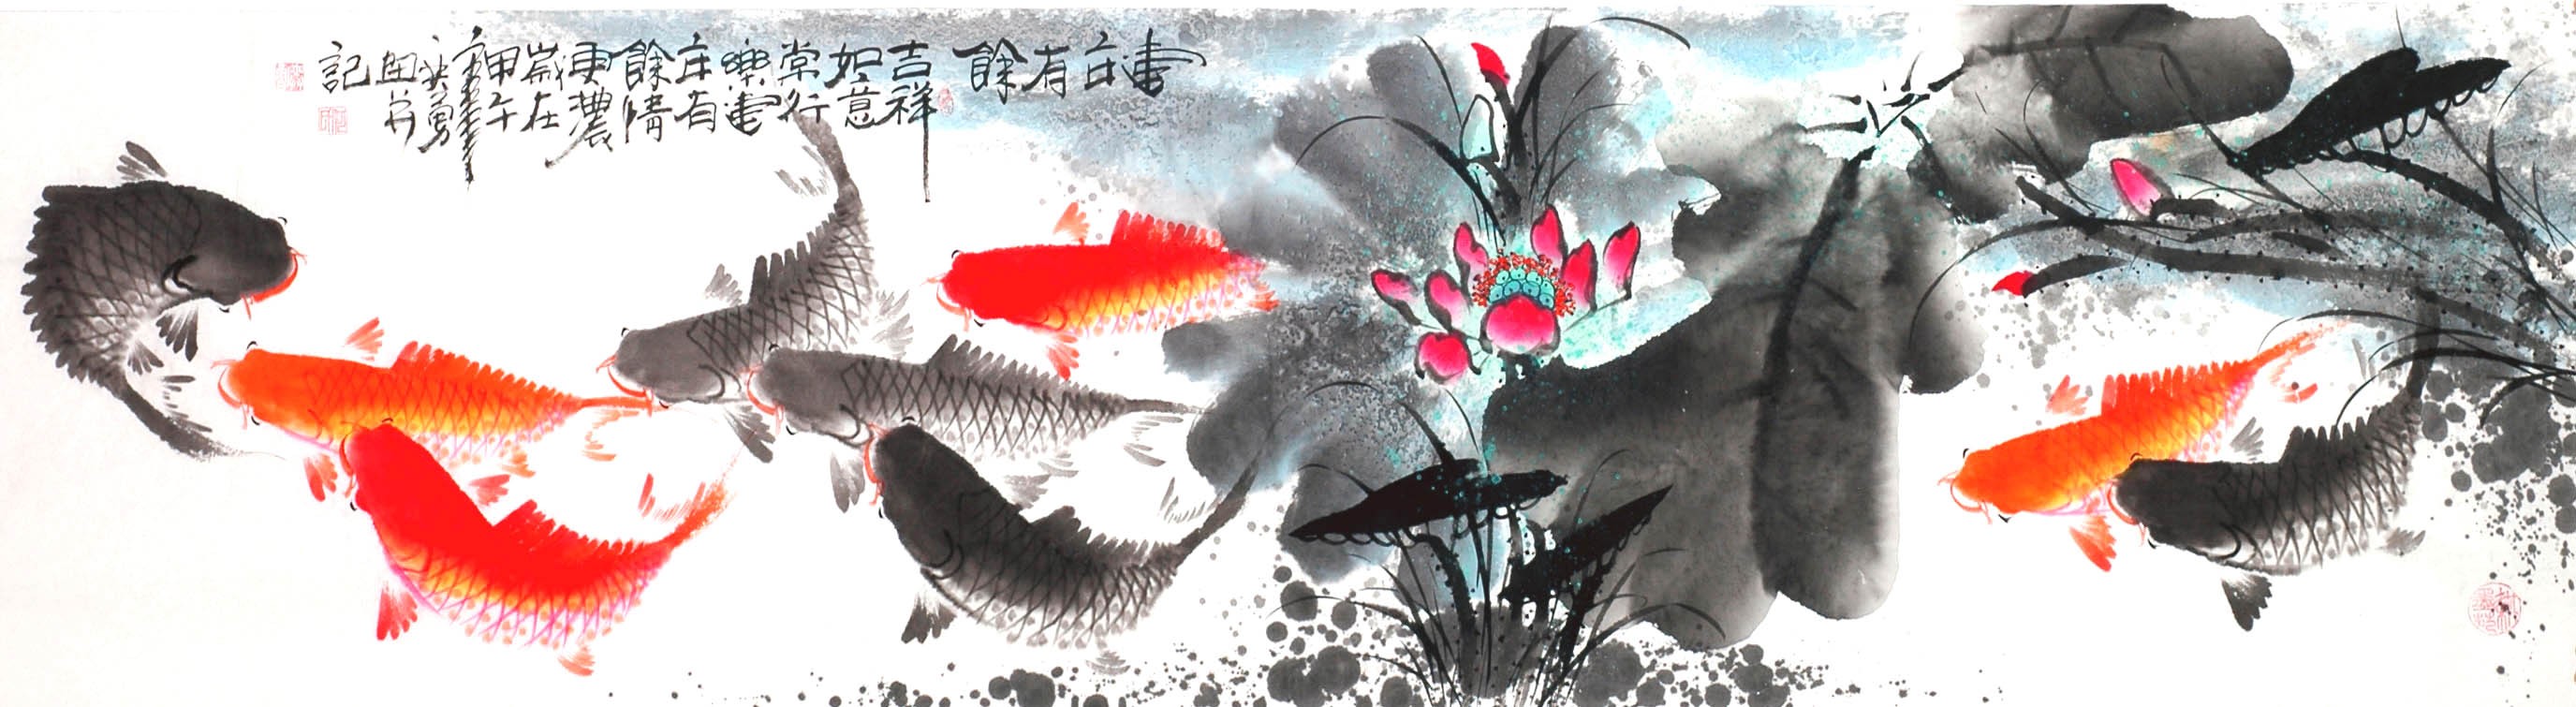 Chinese Fish Painting - CNAG013948